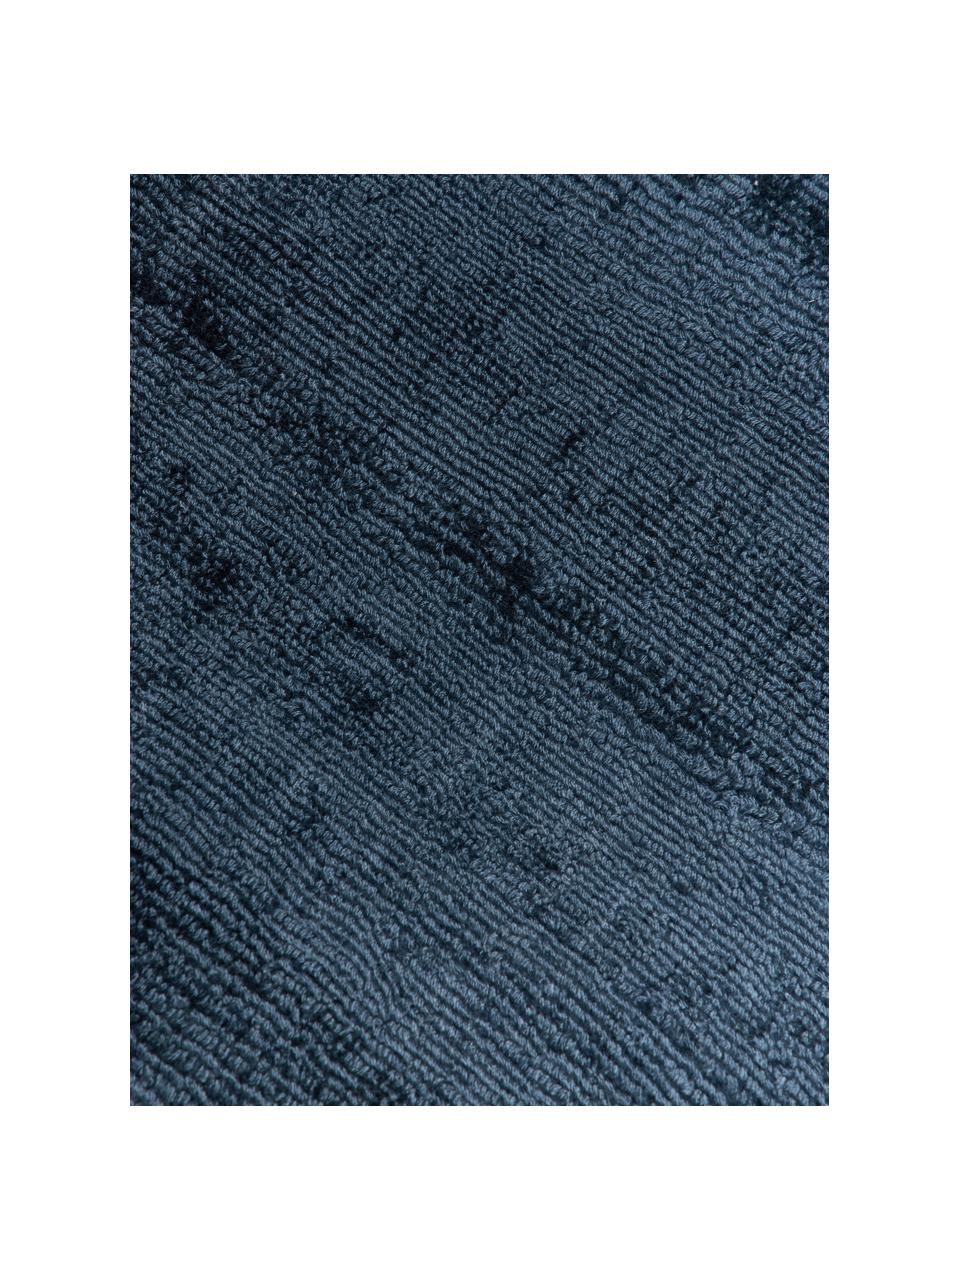 Tapis rond en viscose tissé main Jane, Bleu foncé, Ø 150 cm (taille M)